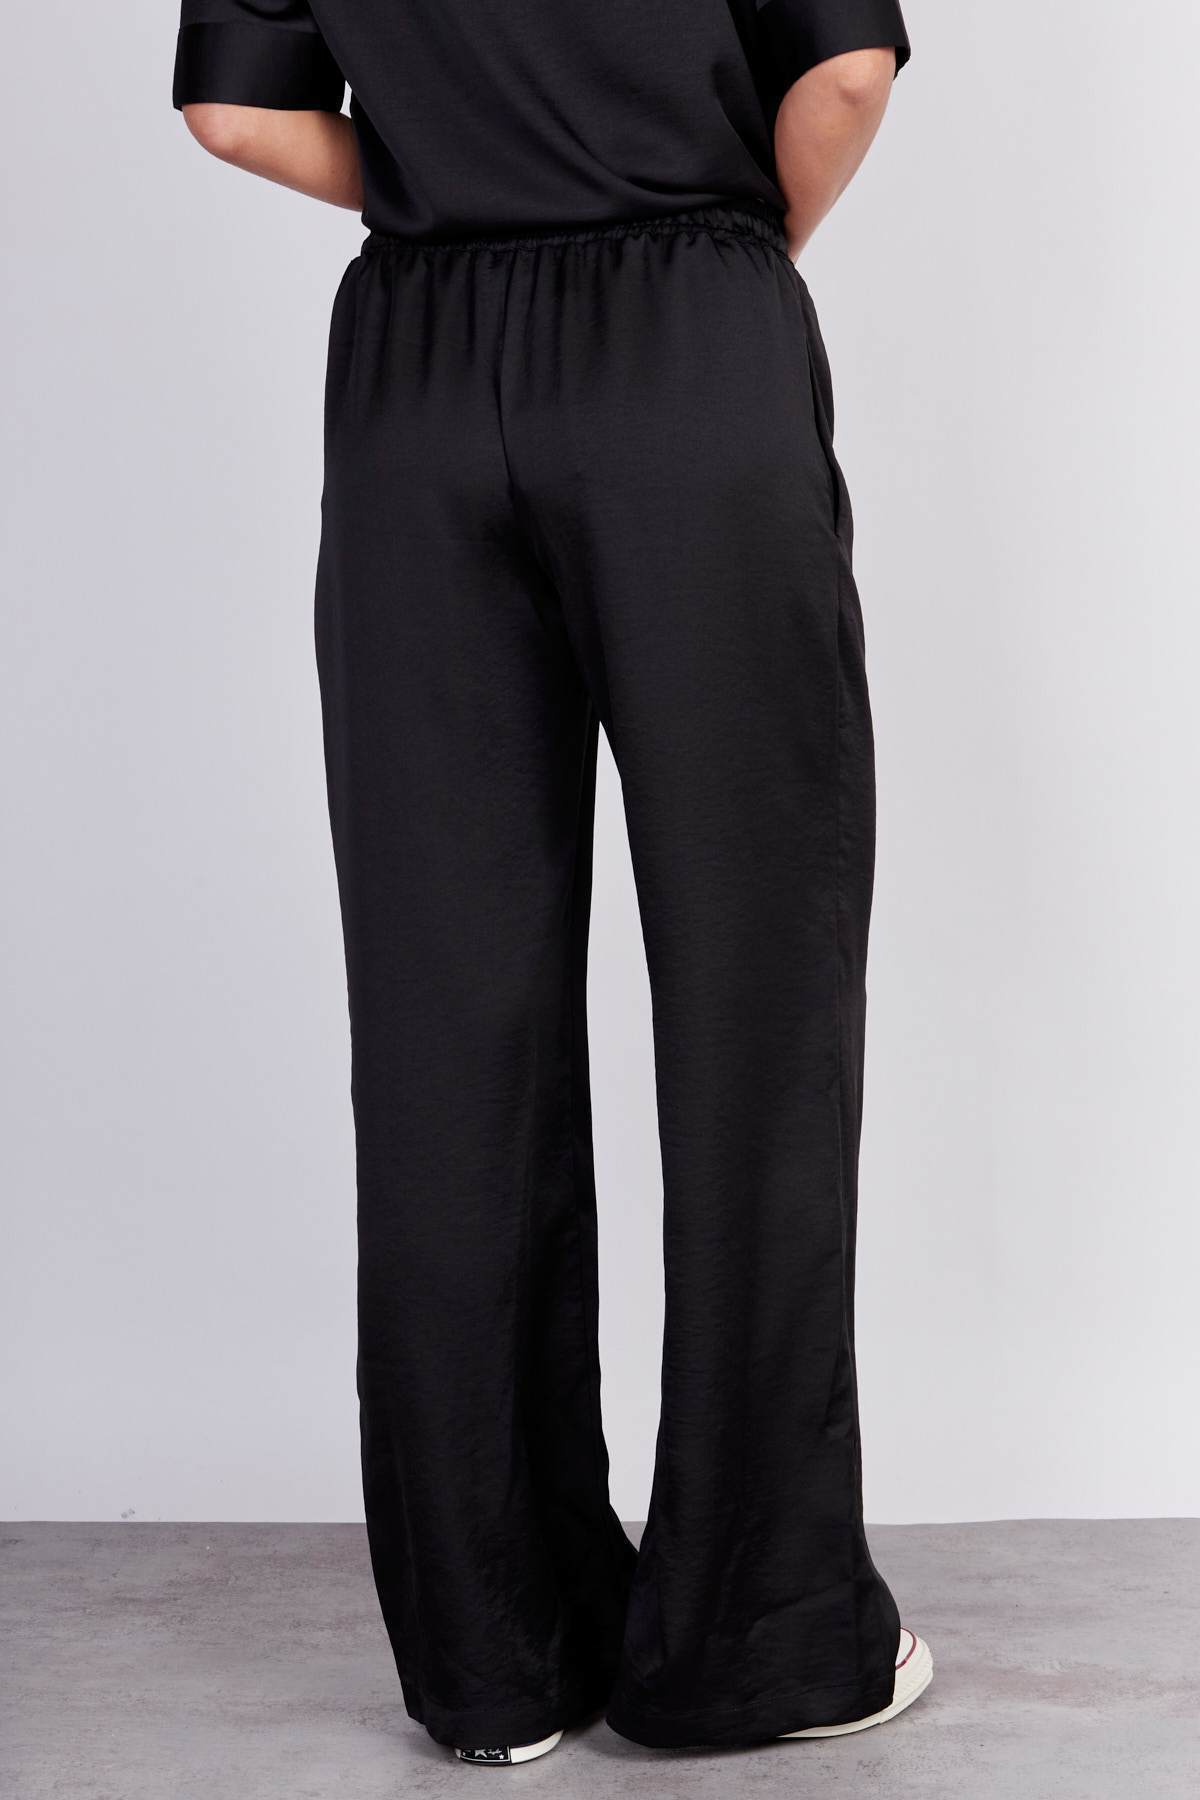 מכנסי אמי סאטן בצבע שחור - Moi Collection